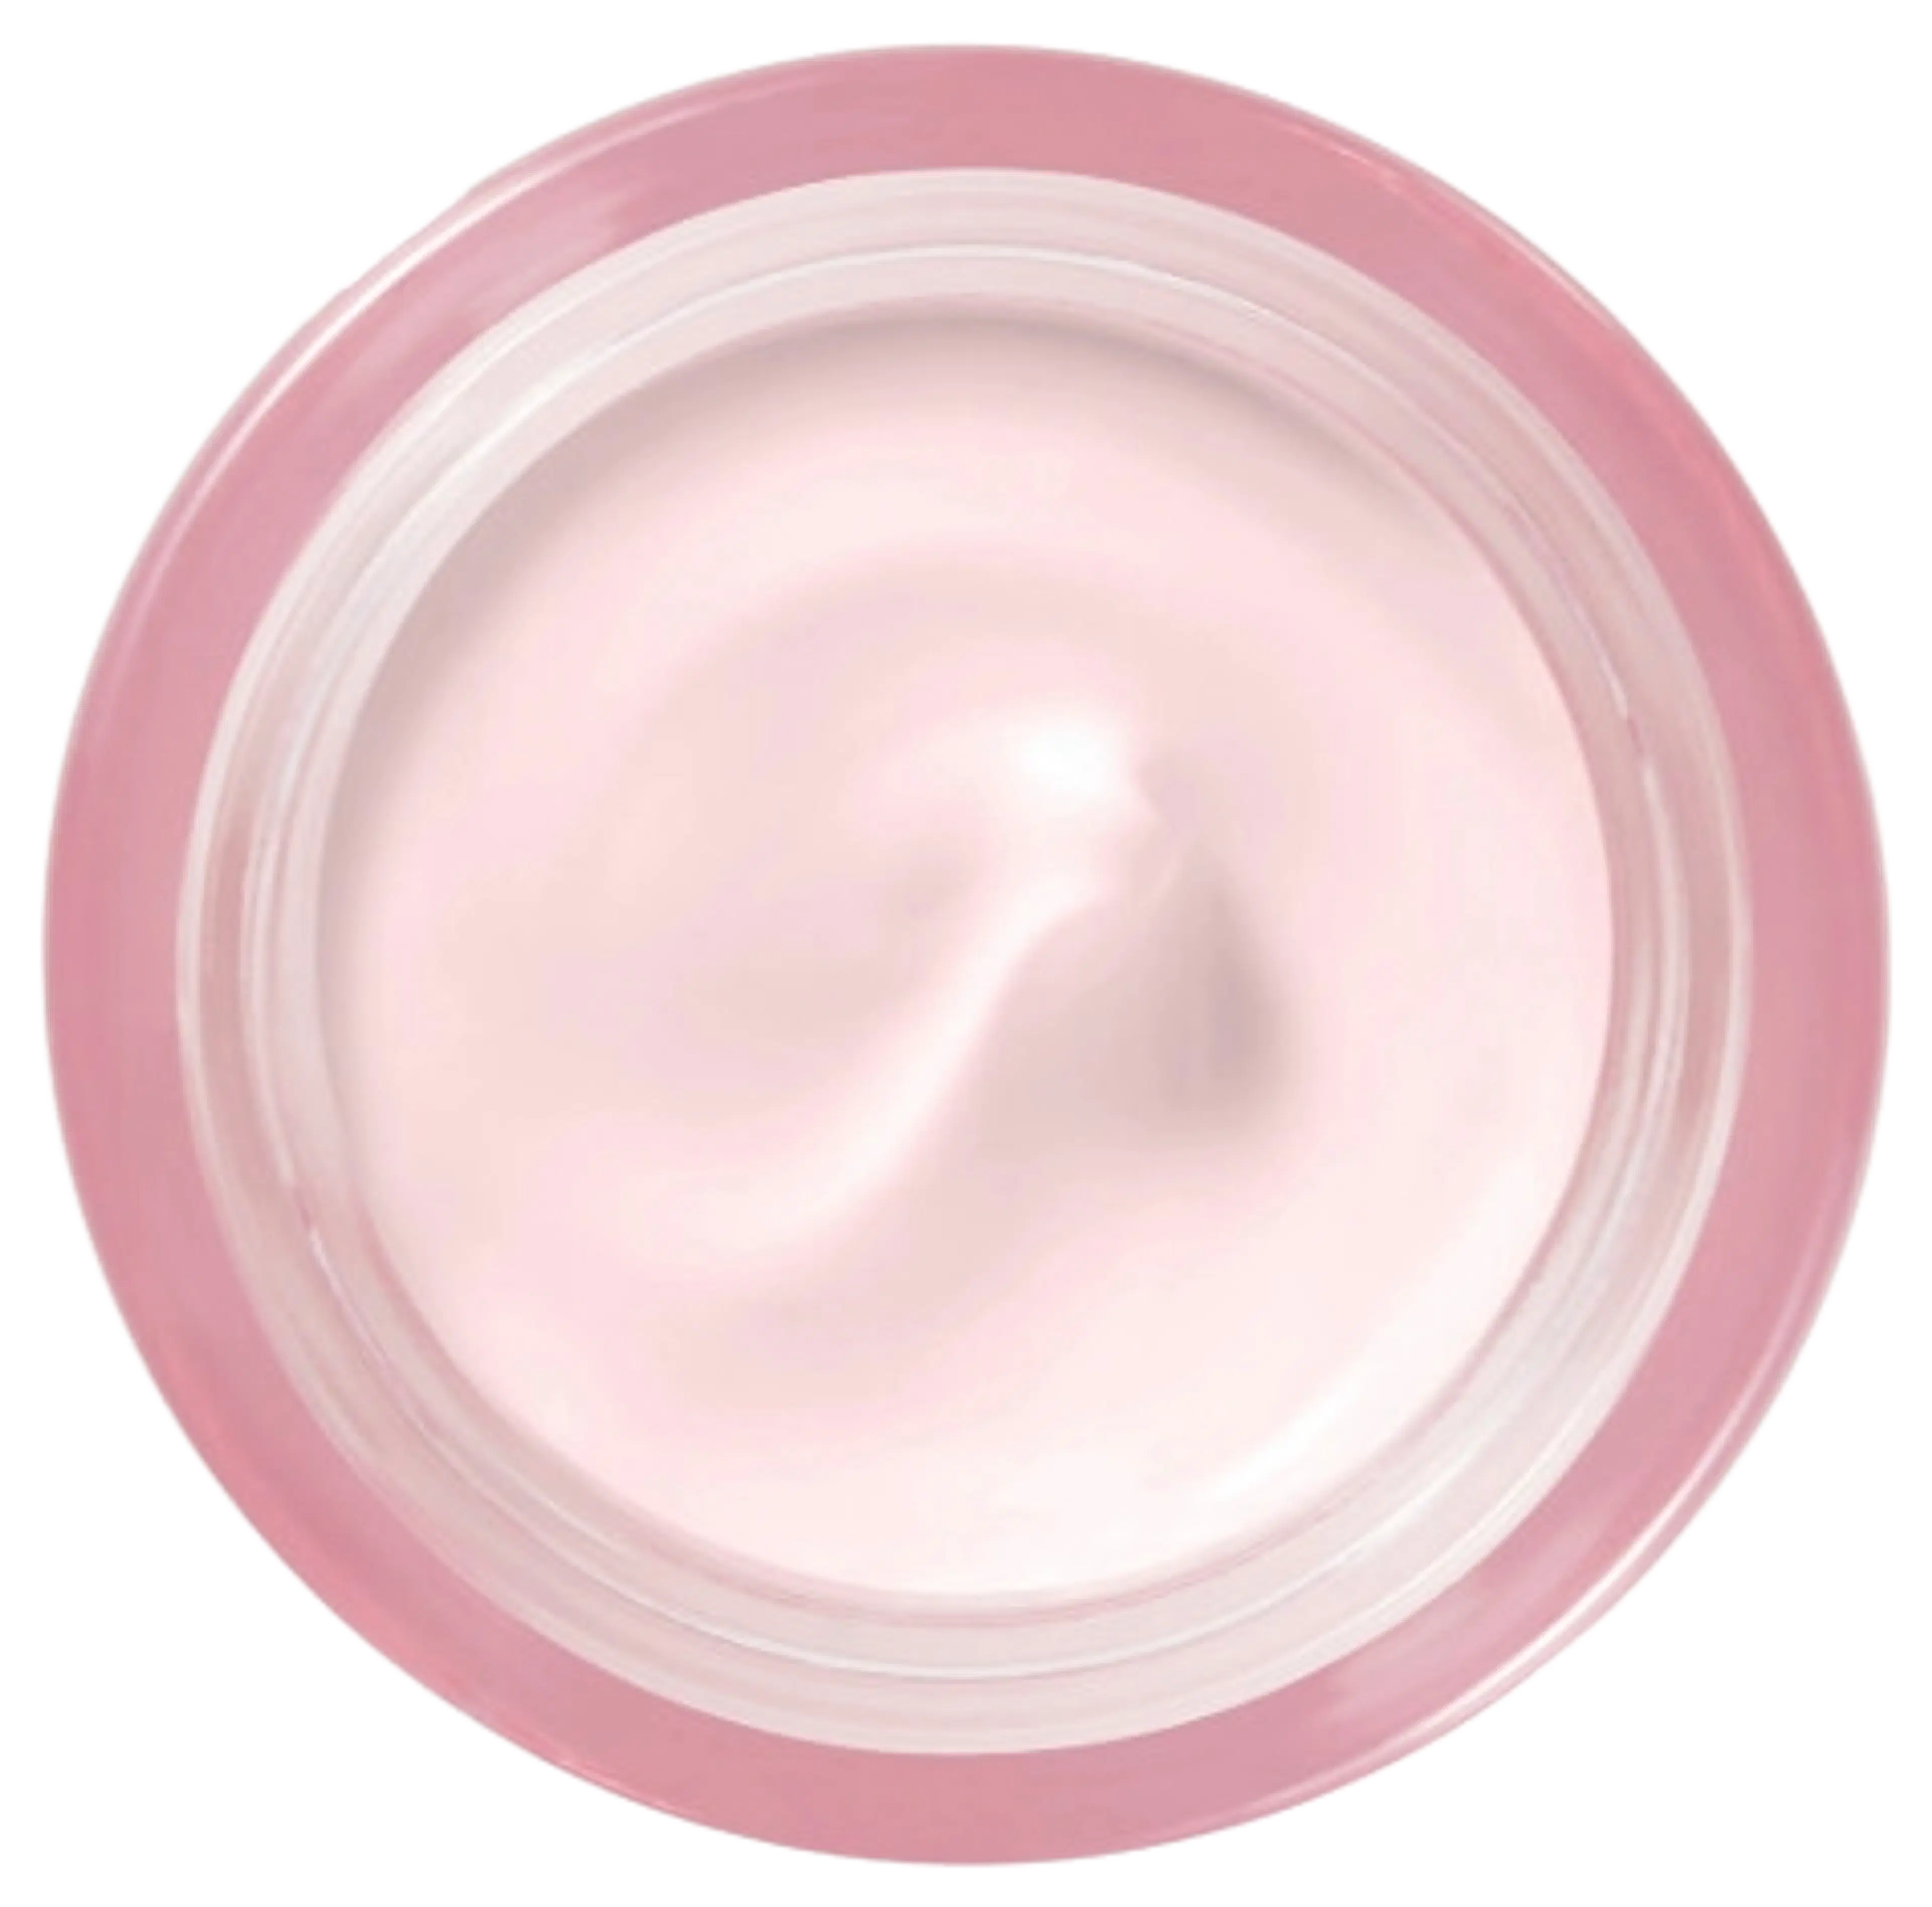 Lancôme Hydra Zen Cream kosteusvoide 50 ml